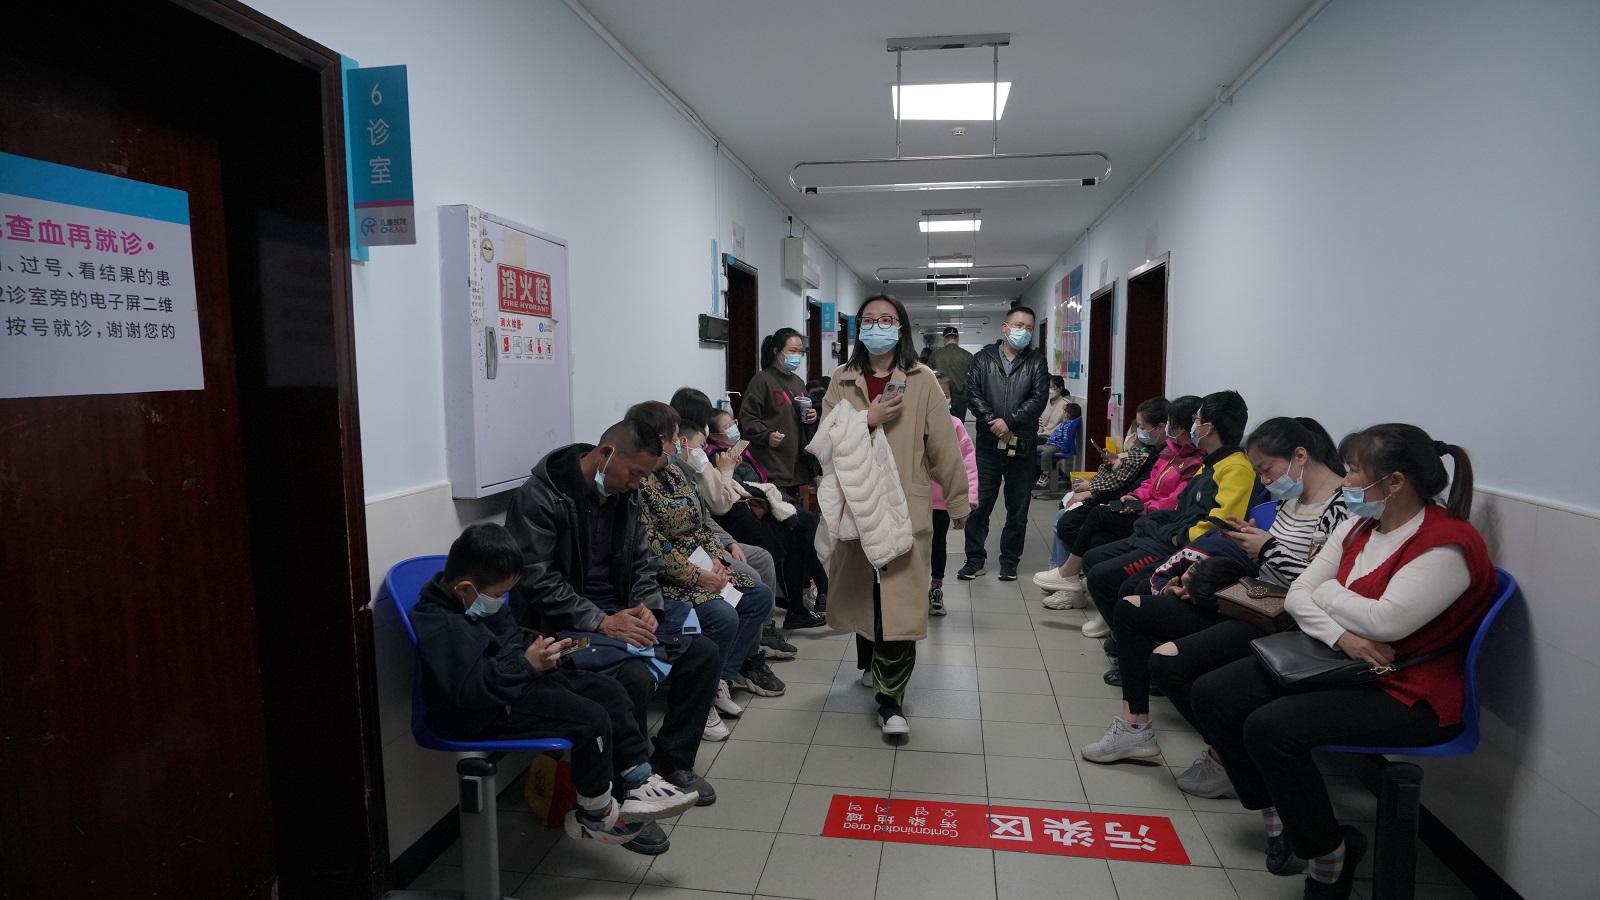 فيروس خطير ينتشر بالصين وعلماء يحذرون من جائحة عالمية